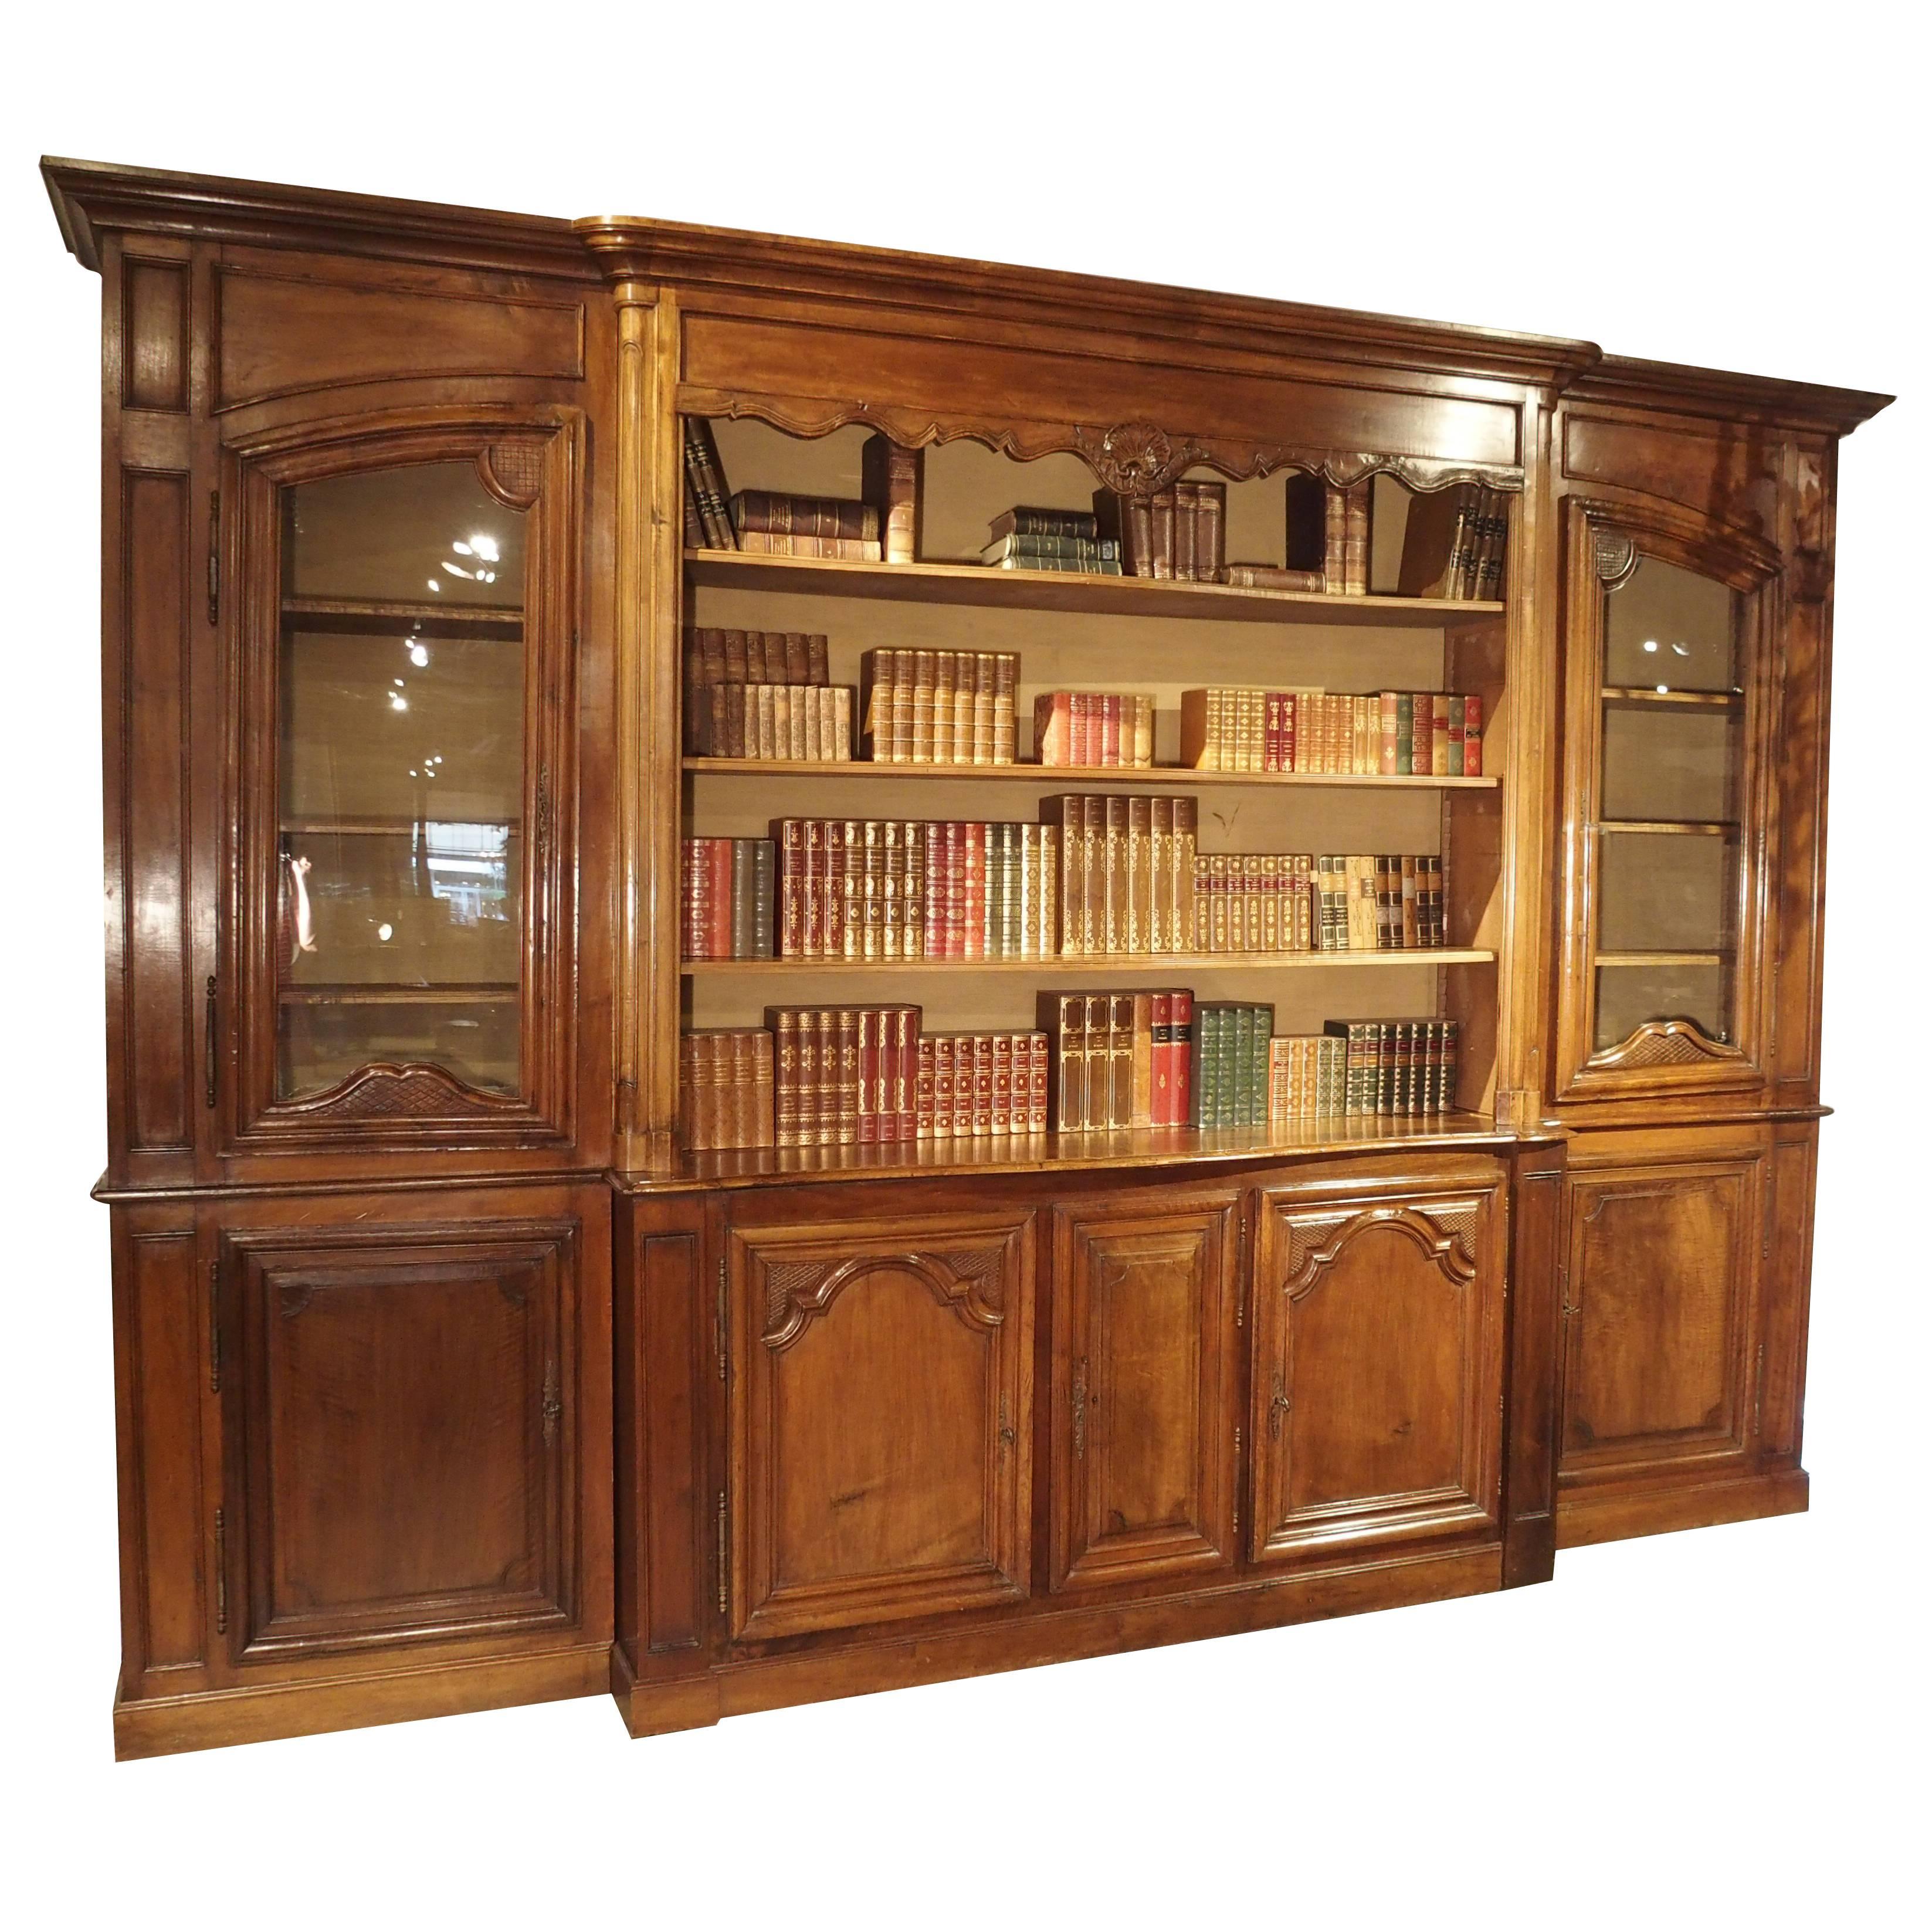 Antique French Walnut Wood Lyonnaise Bookcase